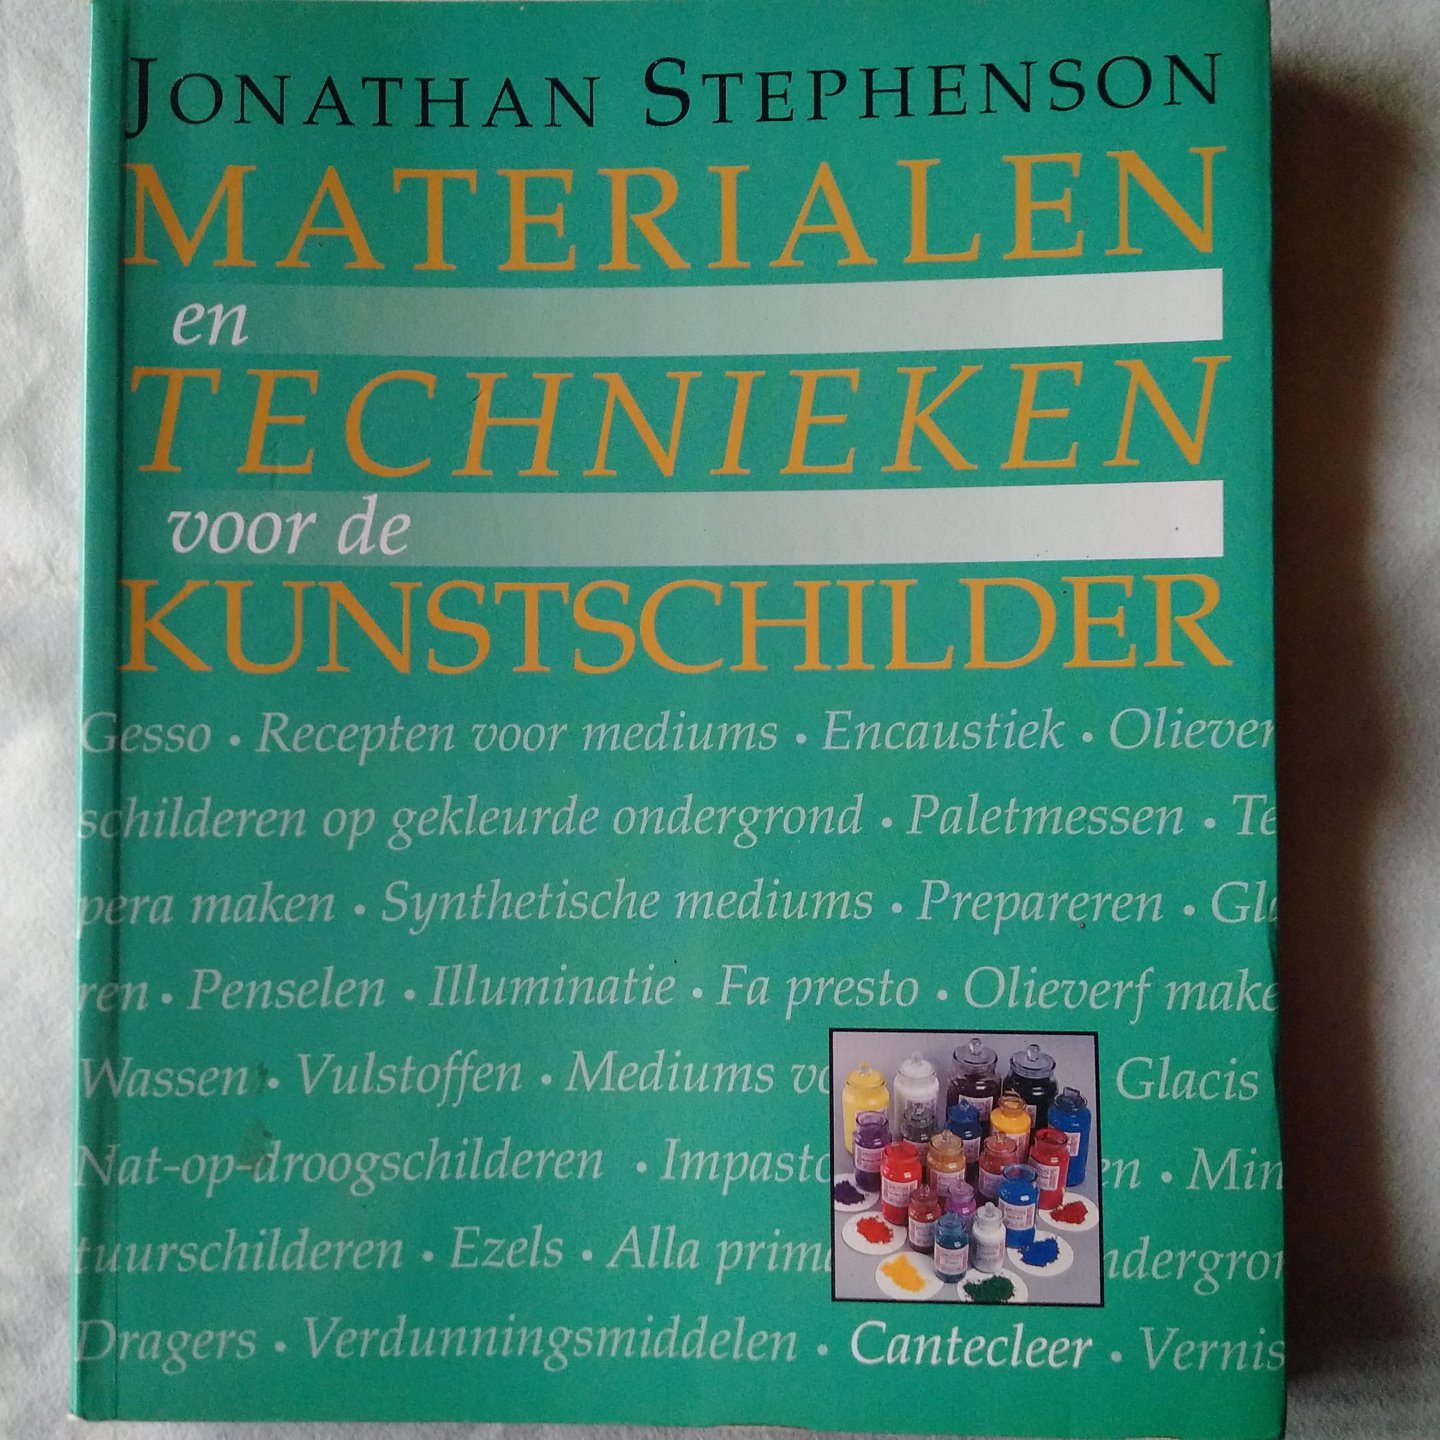 Stephenson, Jonathan - Materialen en technieken voor de kunstschilder